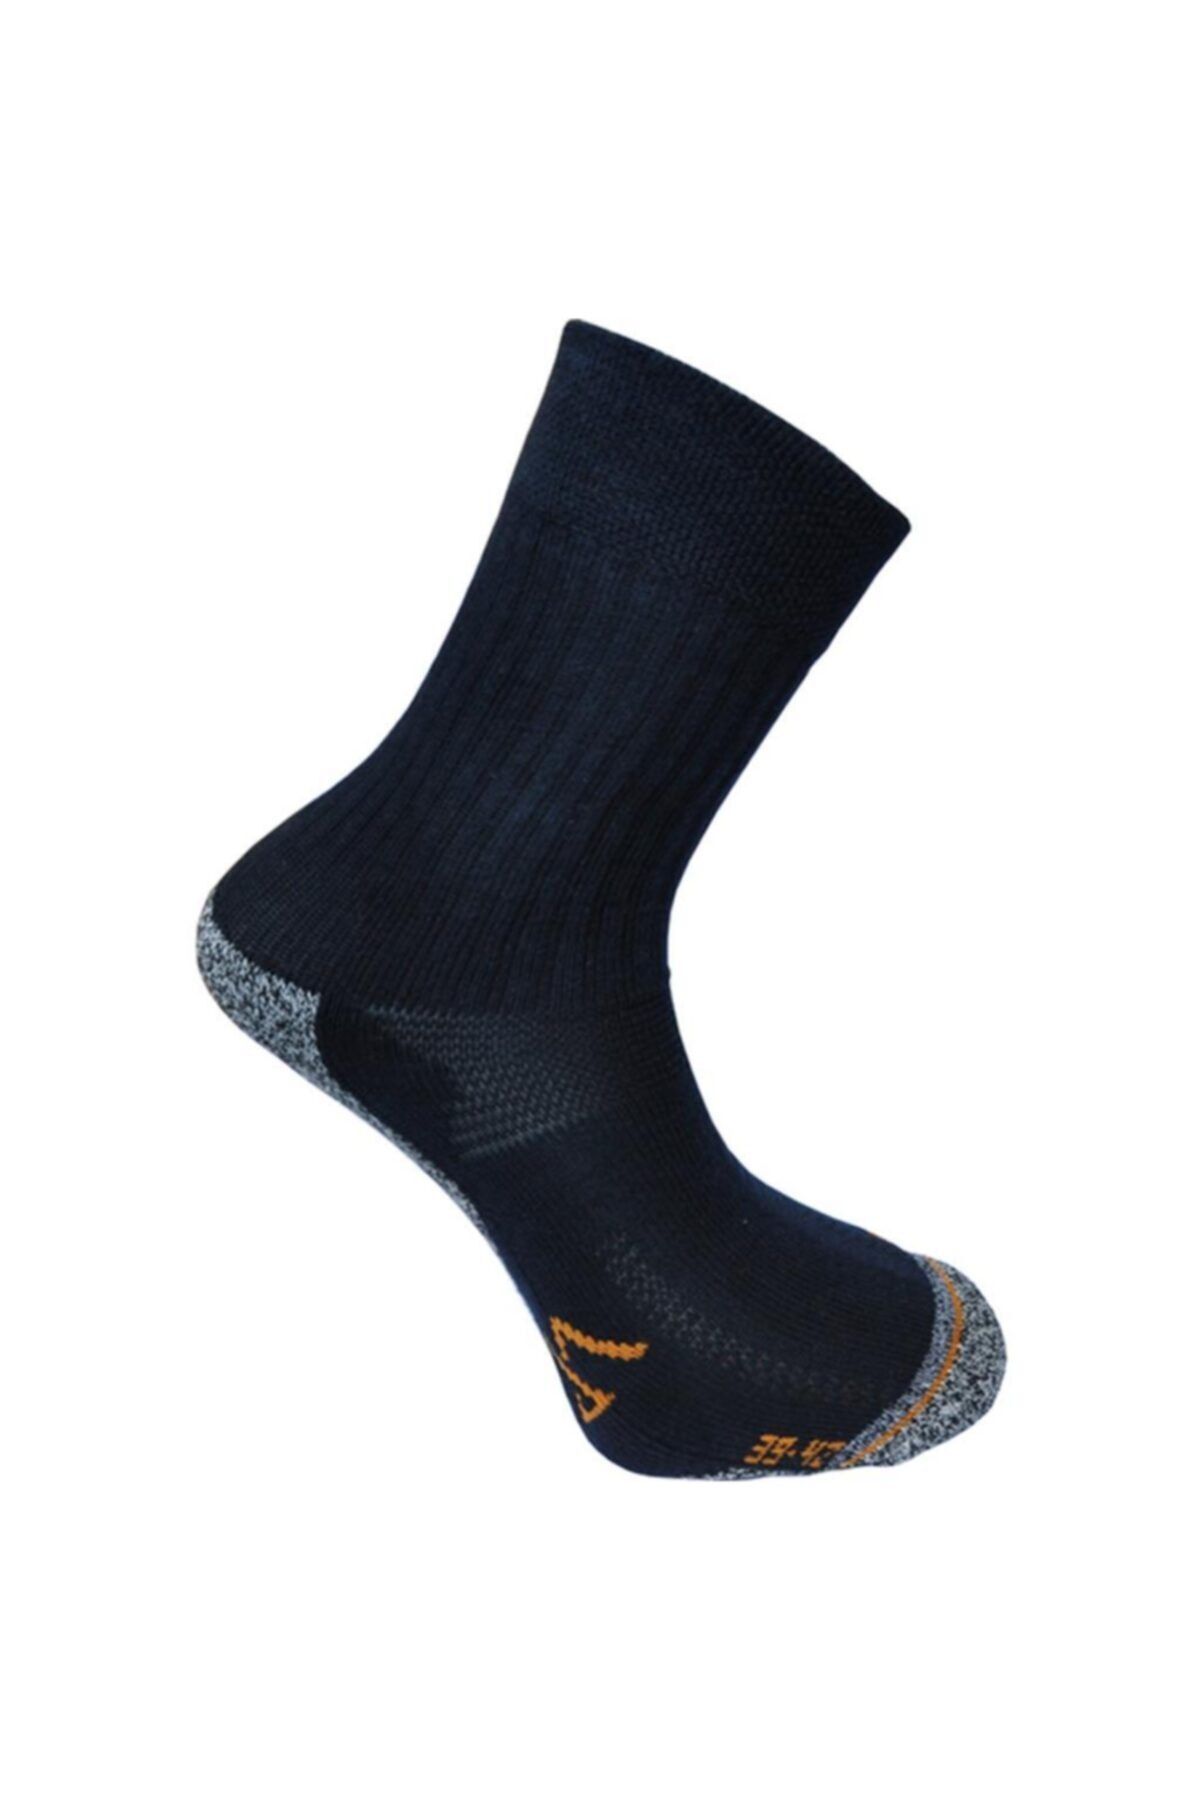 Makalu Ultra Comfort Çorap Lacivert-43-46